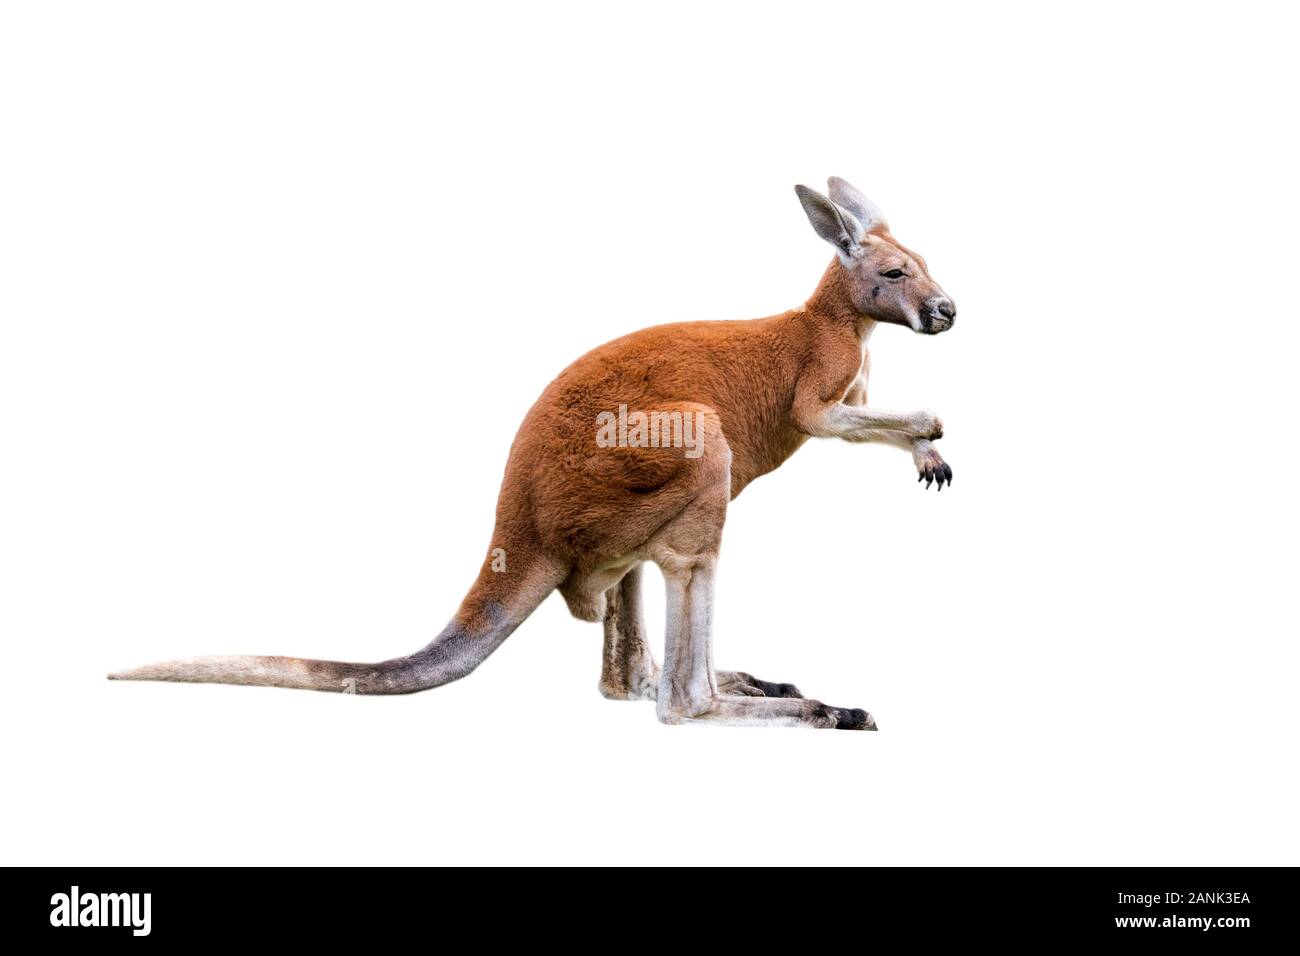 Kangourou rouge (Macropus rufus) homme, originaire de l'Australie contre l'arrière-plan blanc Banque D'Images